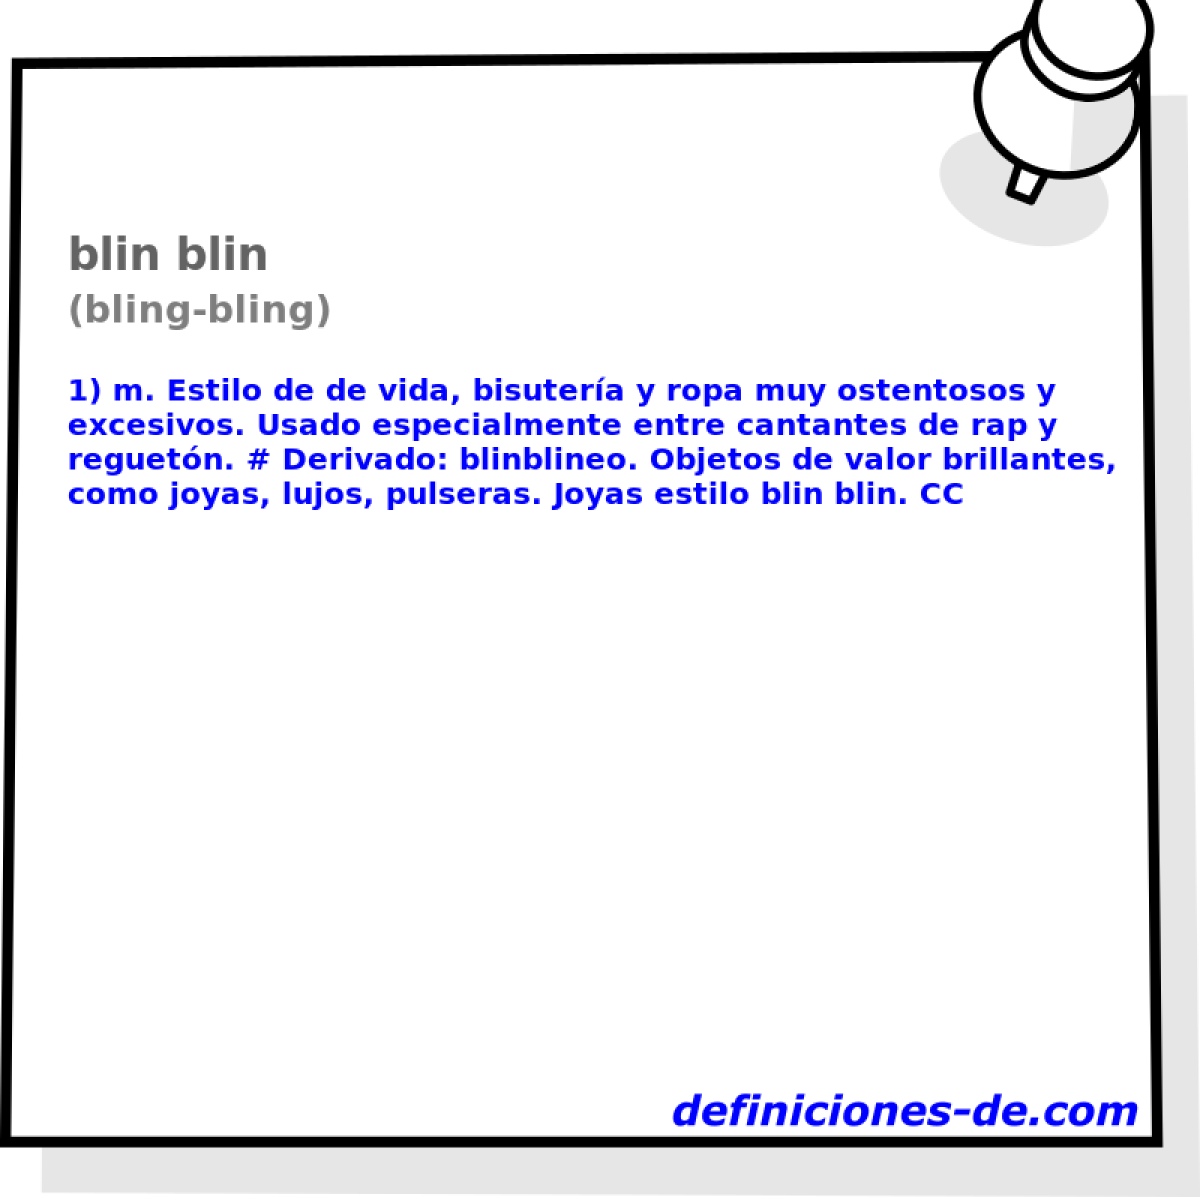 blin blin (bling-bling)